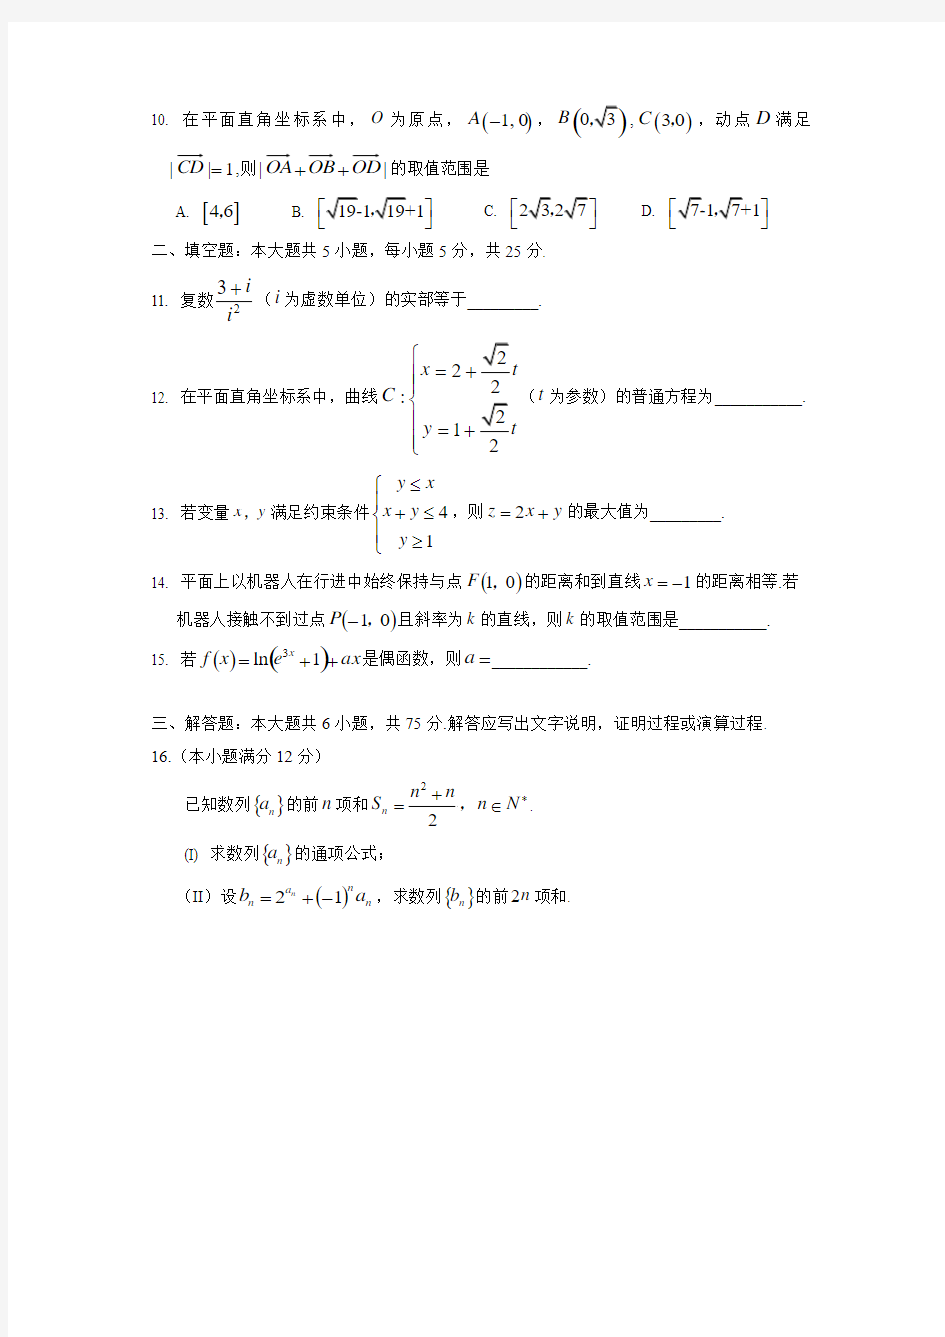 2014年高考文科数学试题(湖南卷)及参考答案